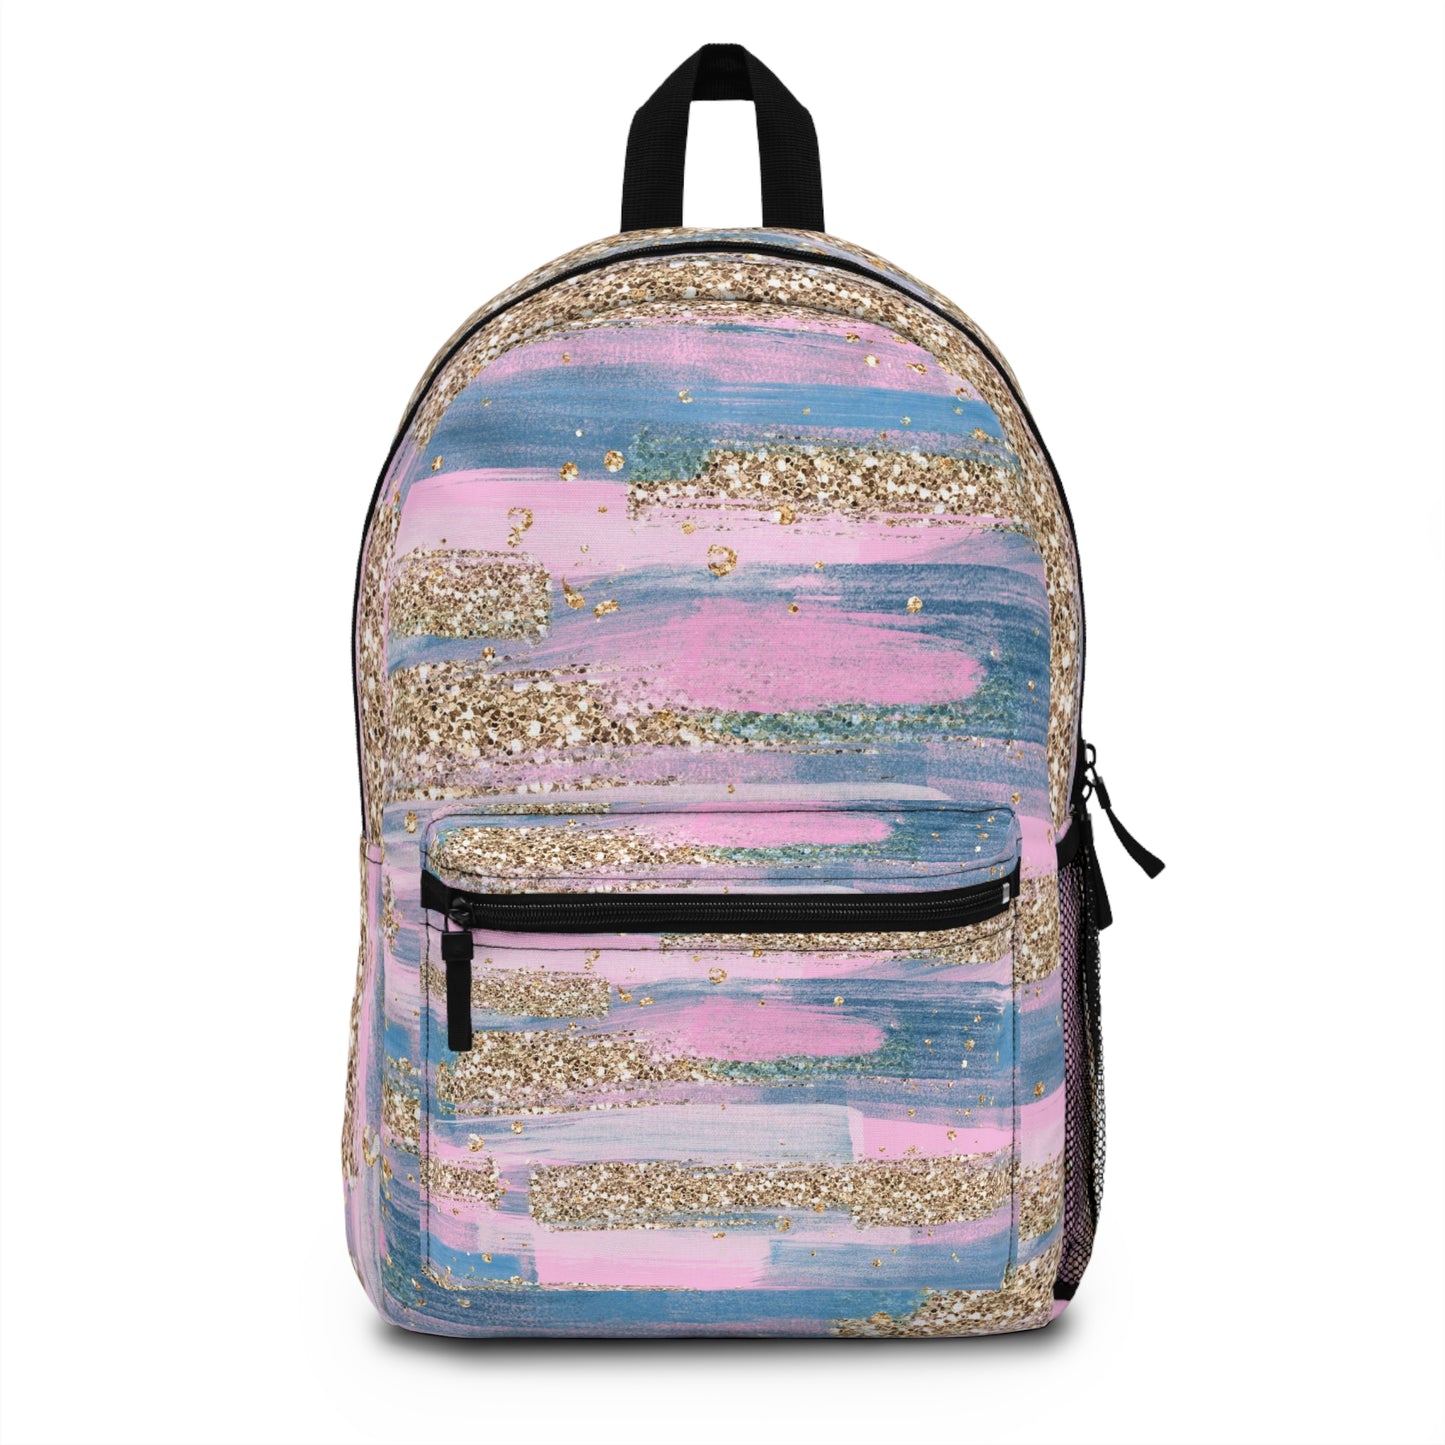 School Backpack For Girls, Kids Backpack, Cute Travel Waterproof Backpack, Lightweight School Bag